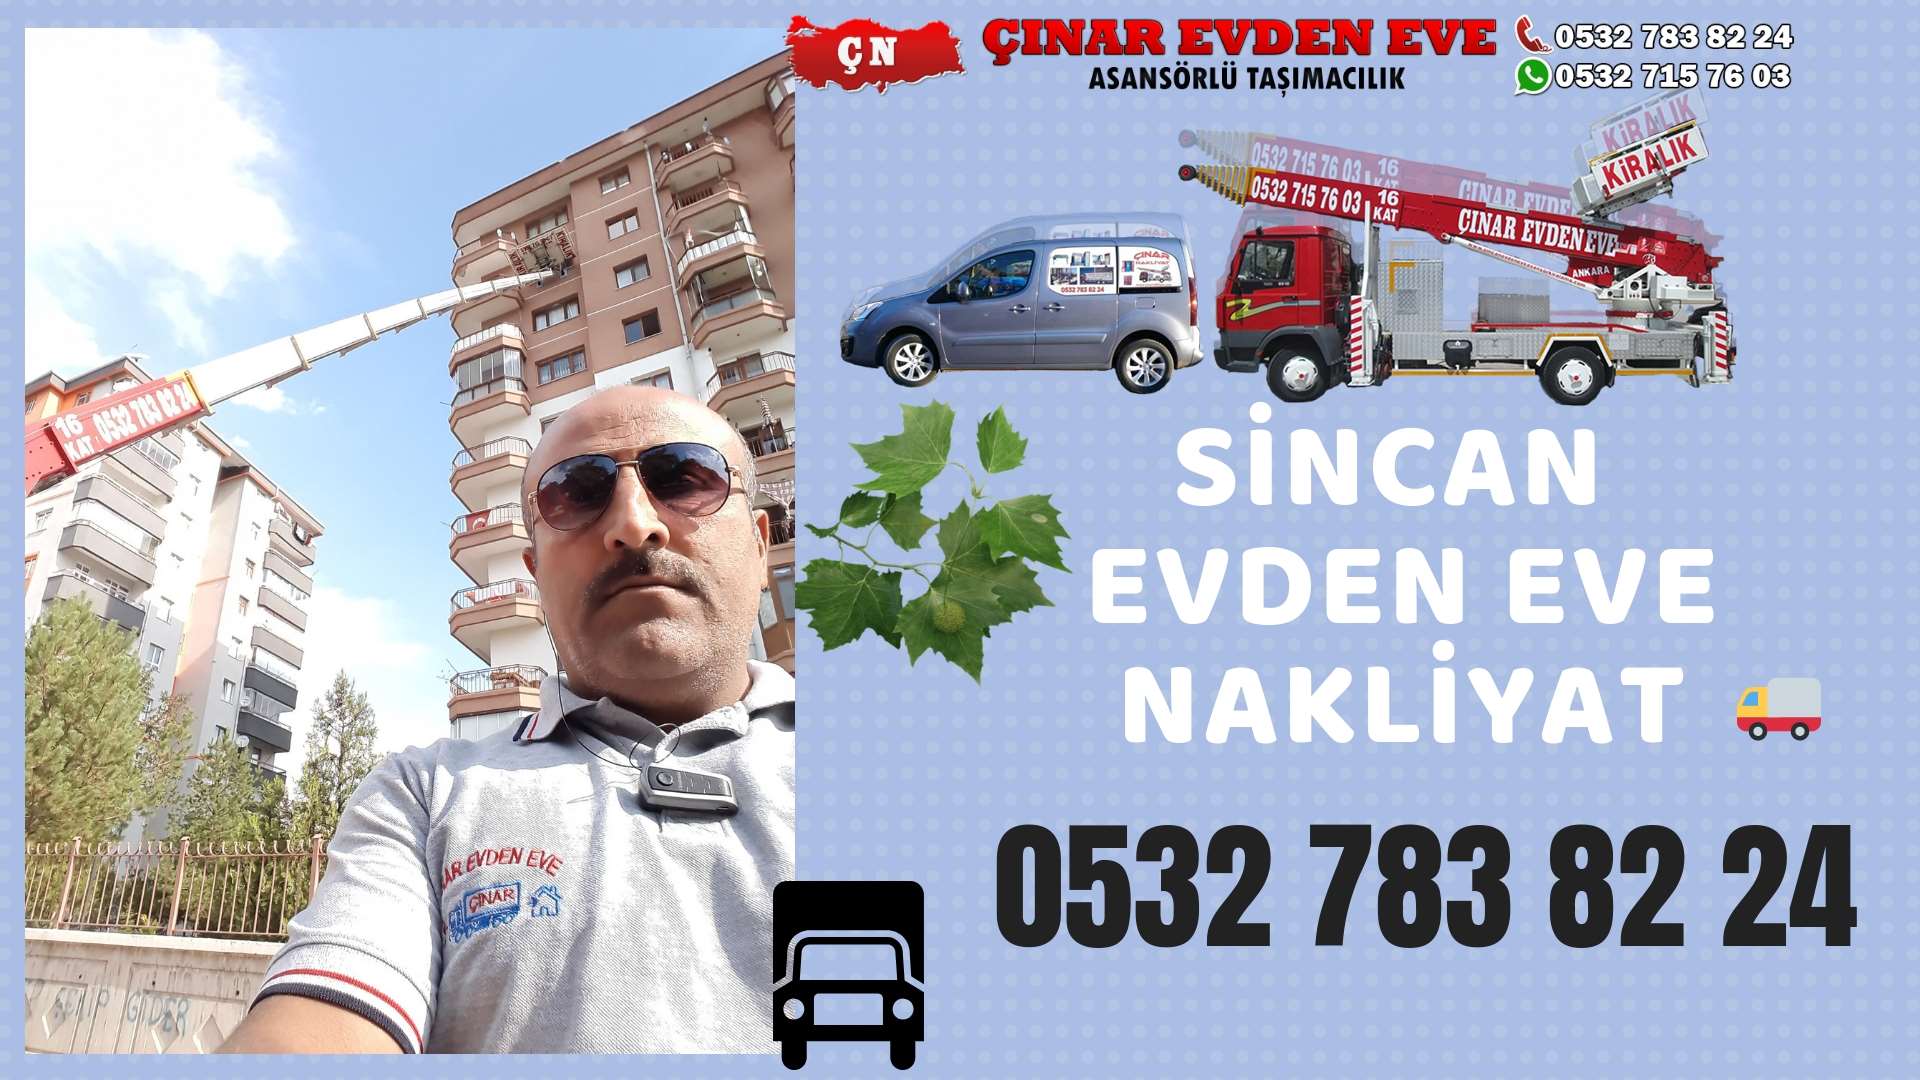 Ankara Keçiören Evden Eve Nakliyat, Asansörlü Taşımacılık, Ofis / İş Yeri Taşıma 0532 715 76 03